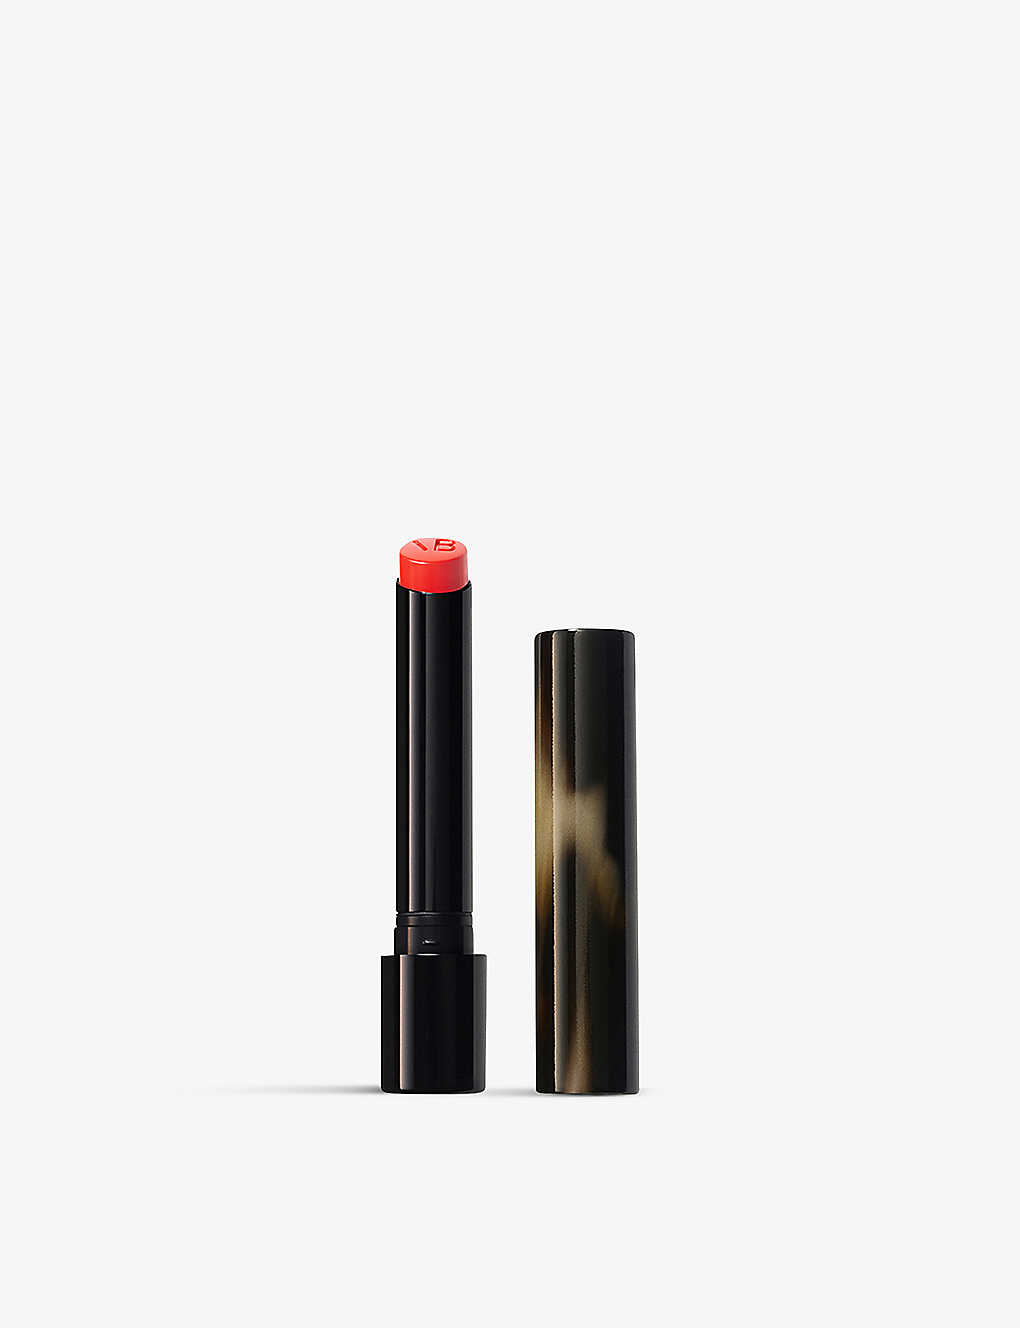 Victoria Beckham Beauty Fire Posh Lipstick 1.9g